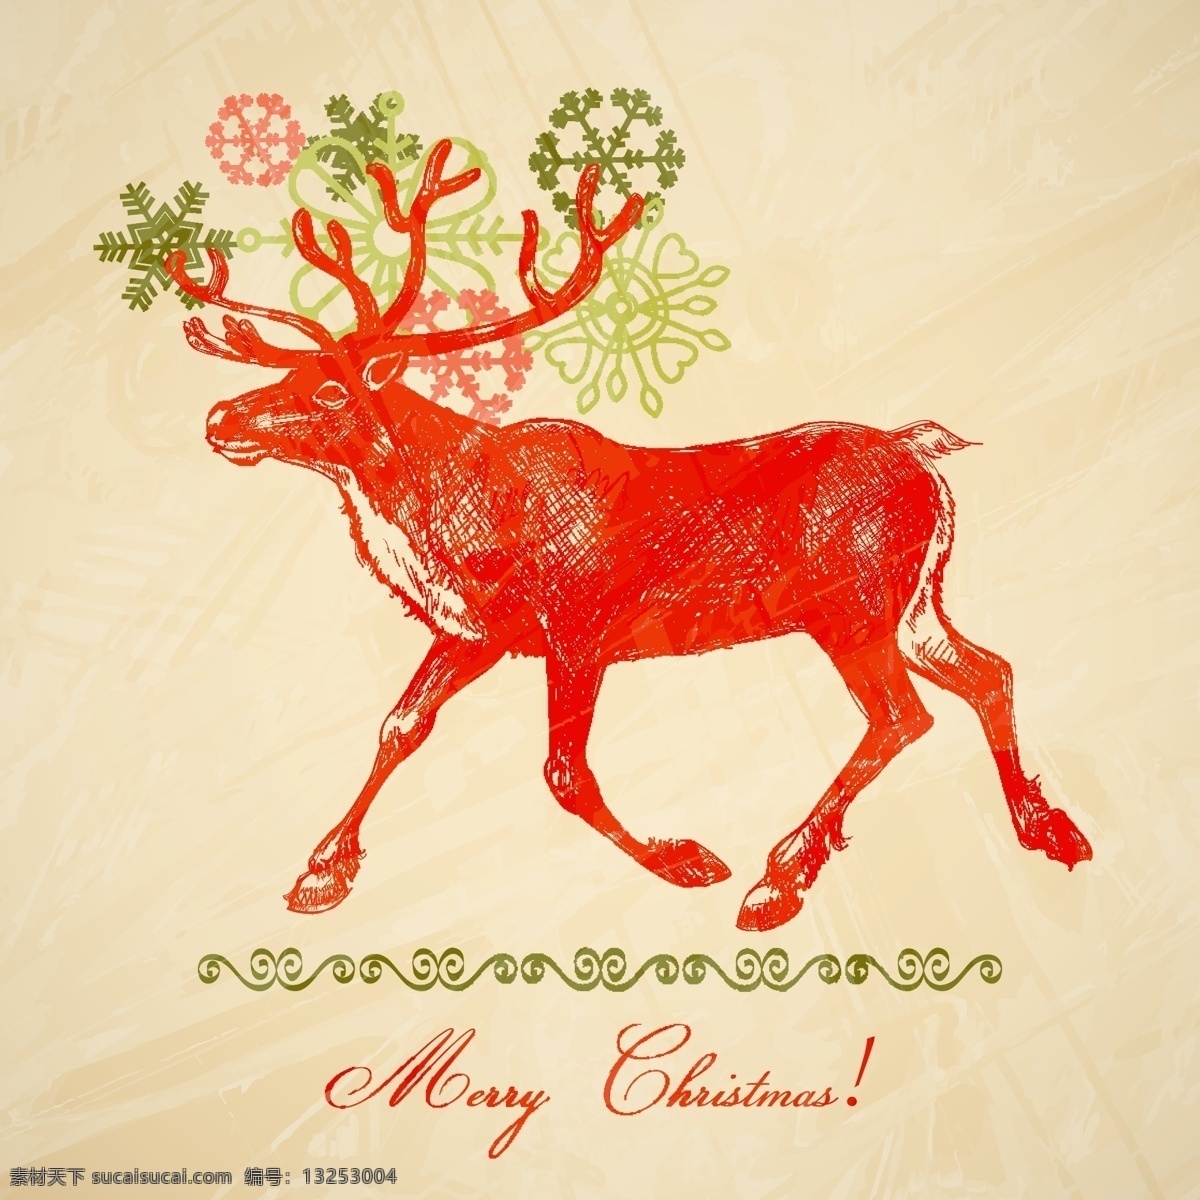 手绘 风格 麋鹿 矢量 圣诞节 雪花 媒介动物 矢量图 矢量人物